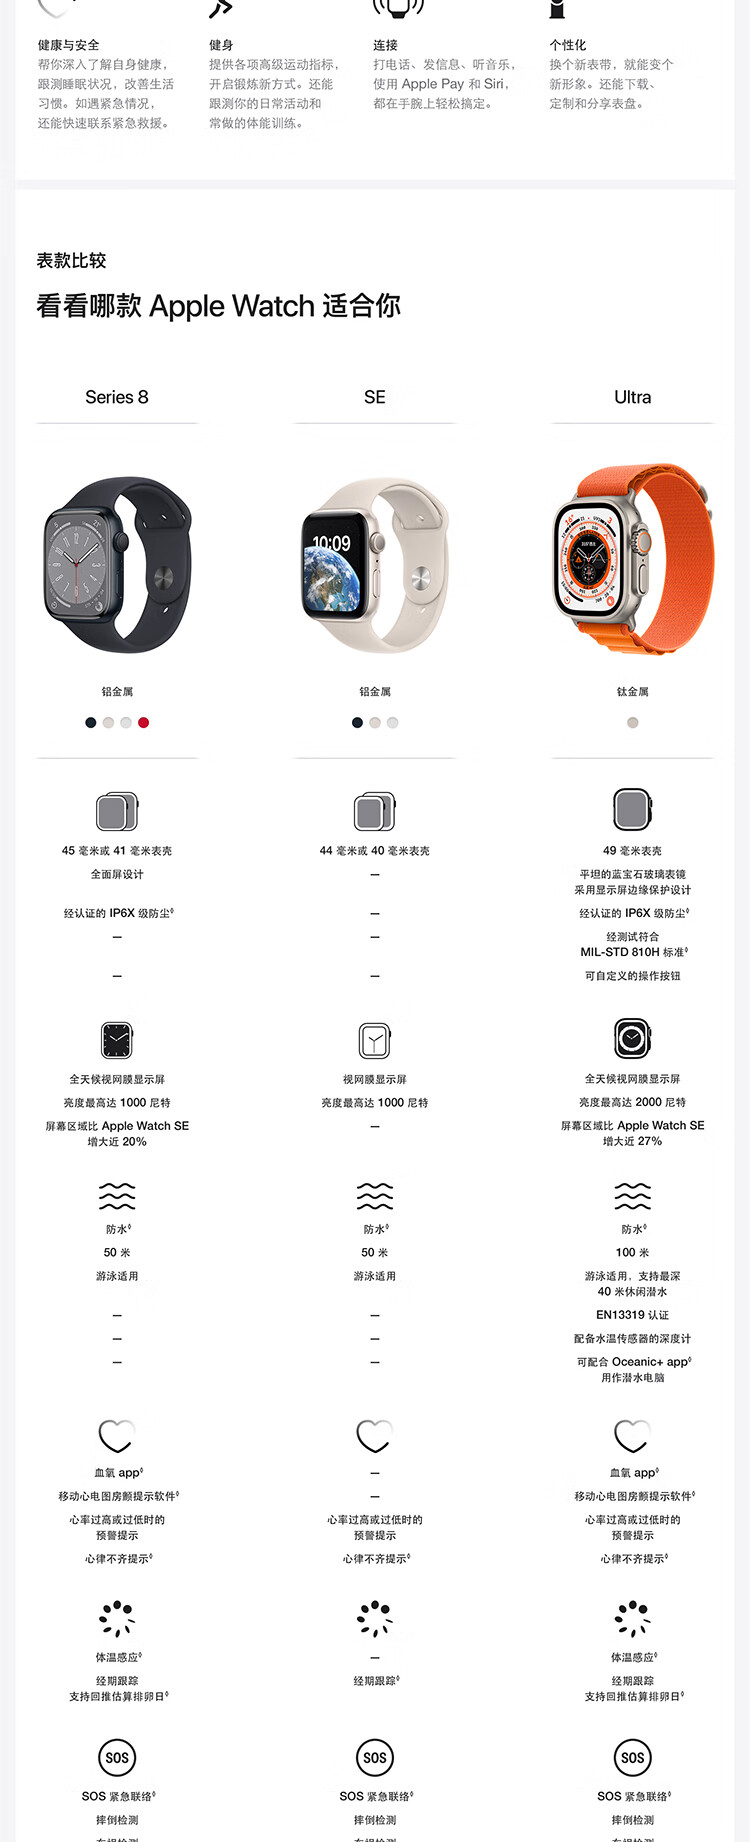 Apple Watch SE 2022款智能手表GPS款40毫米午夜色铝金属表壳午夜色运动型表带 MNJT3CH/A